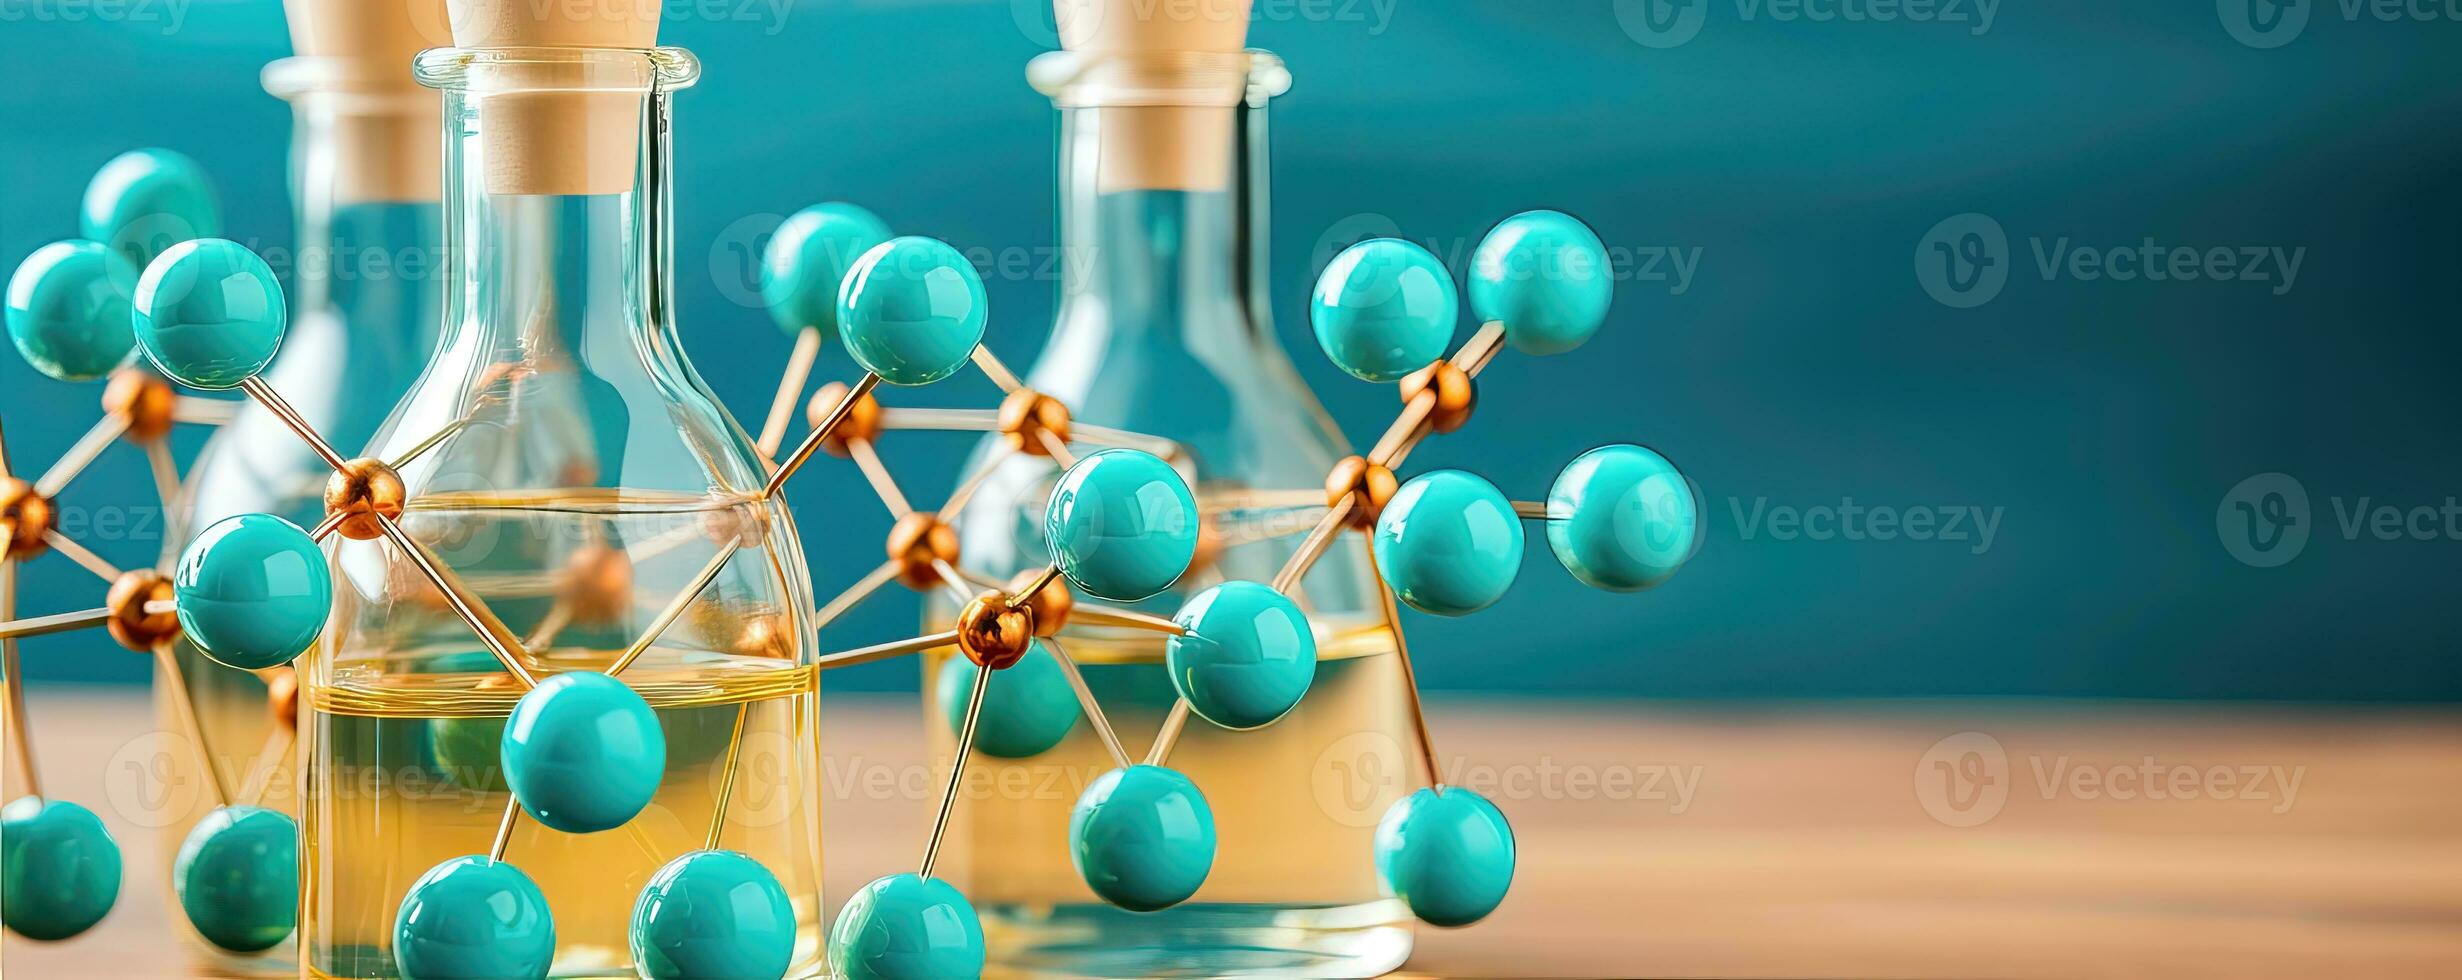 molekyl strukturera och molekyler foto